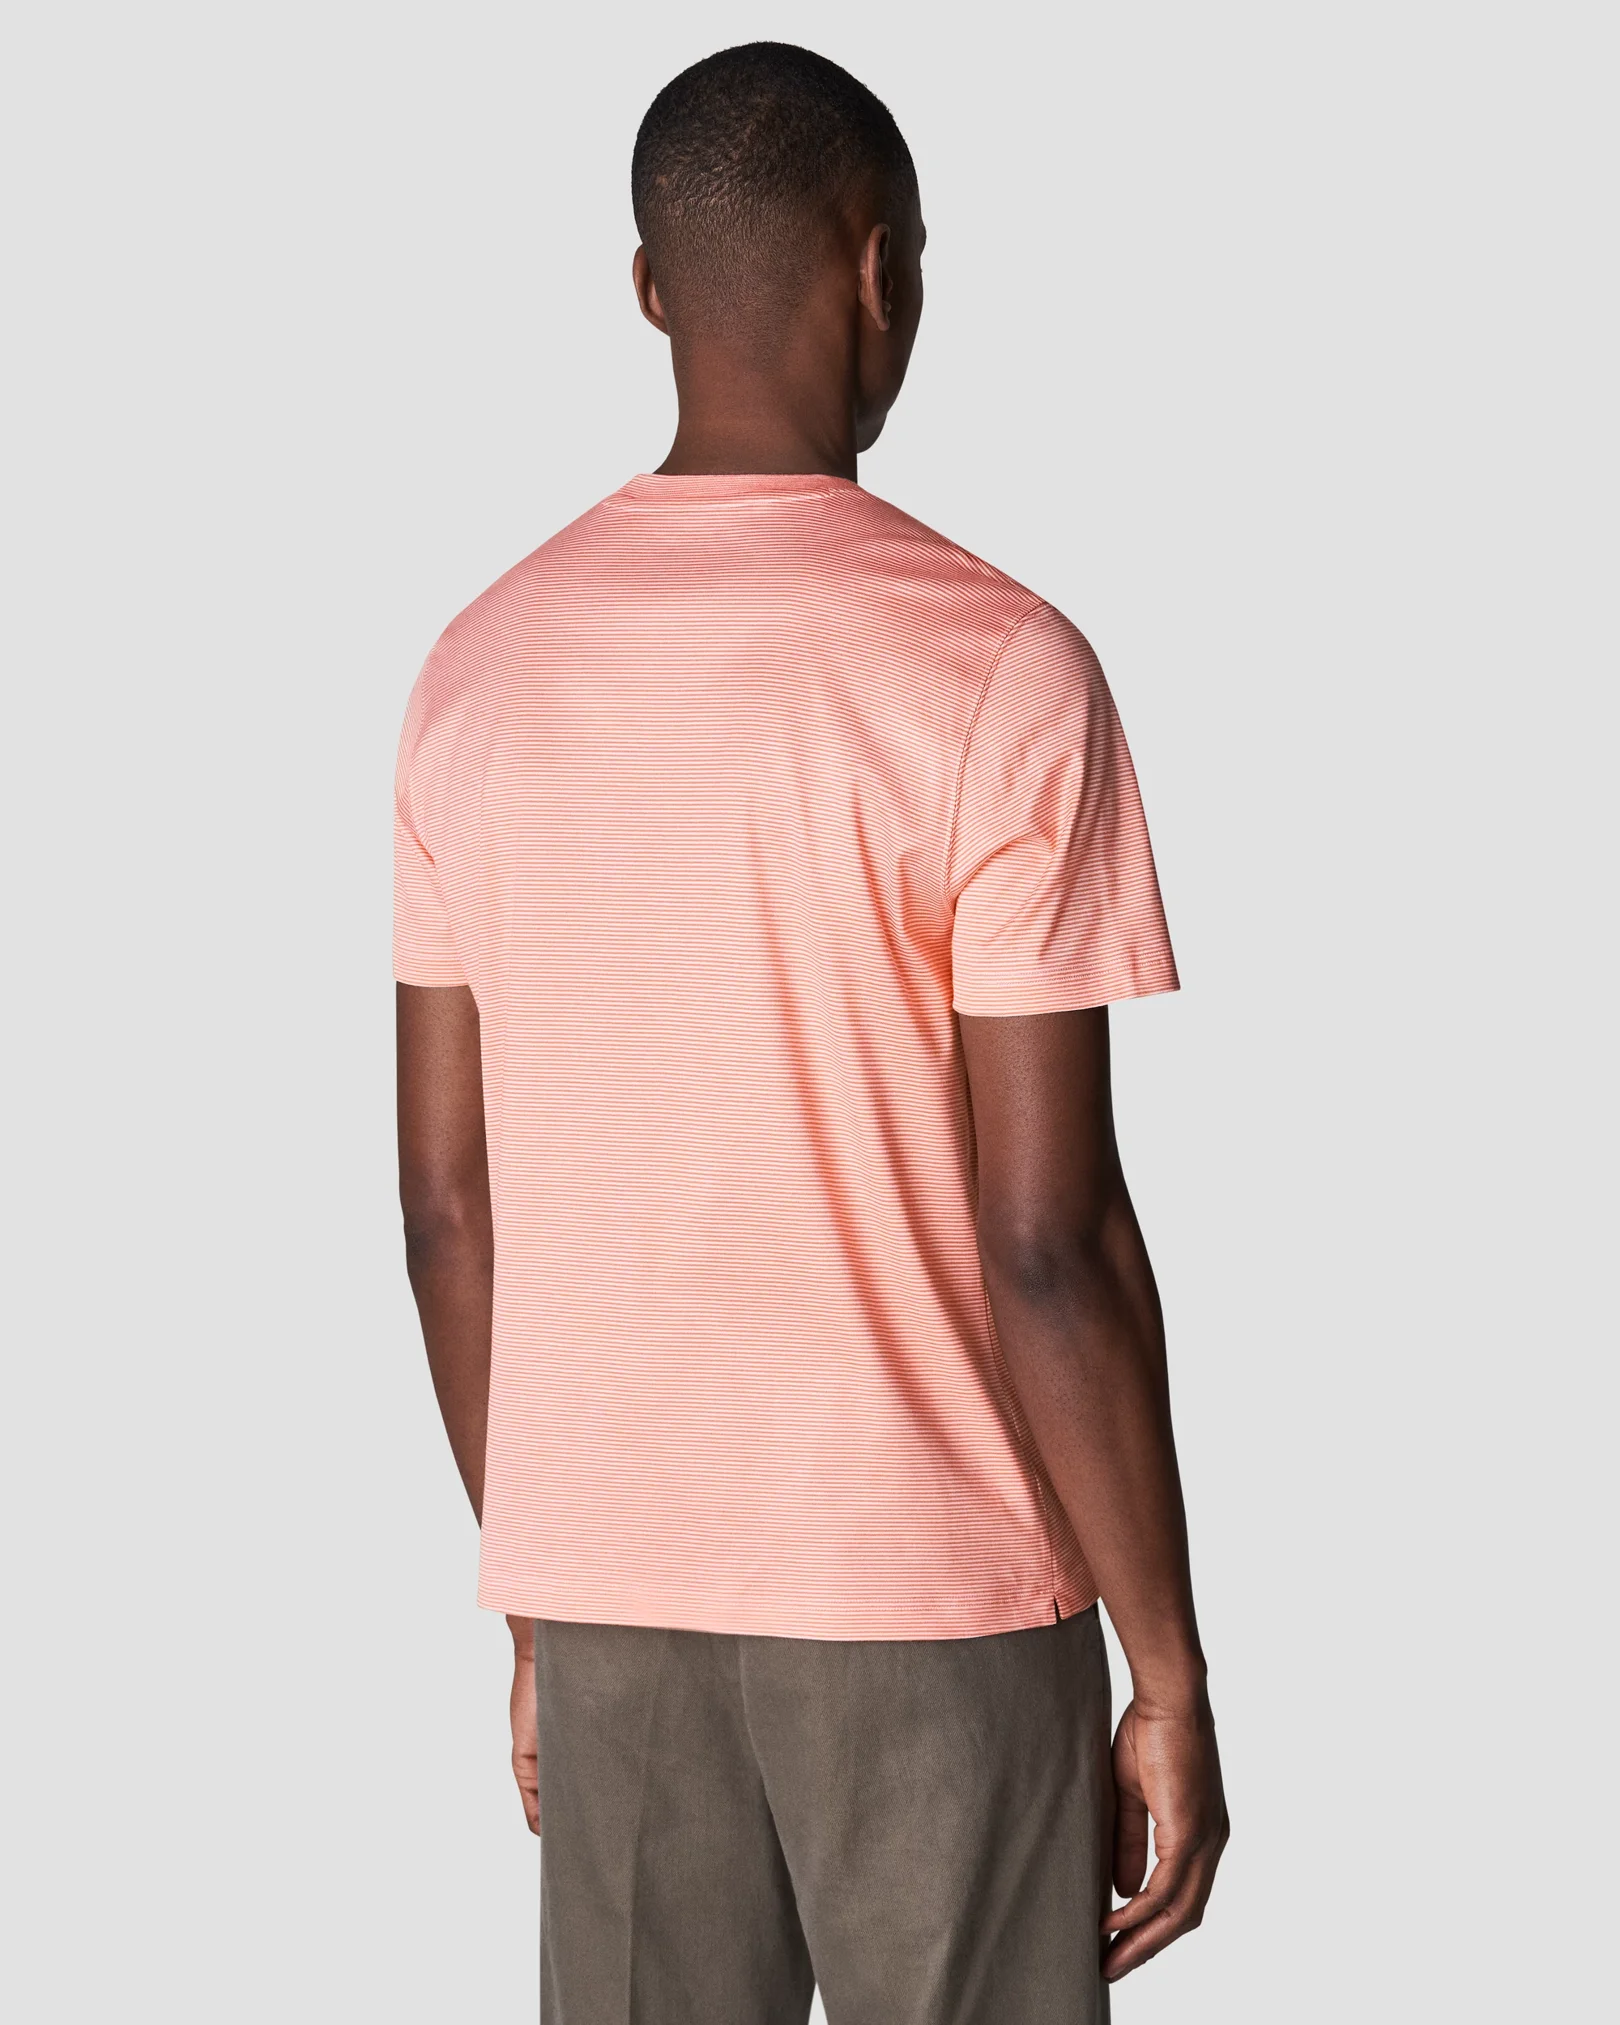 Eton - pink interlock t shirt